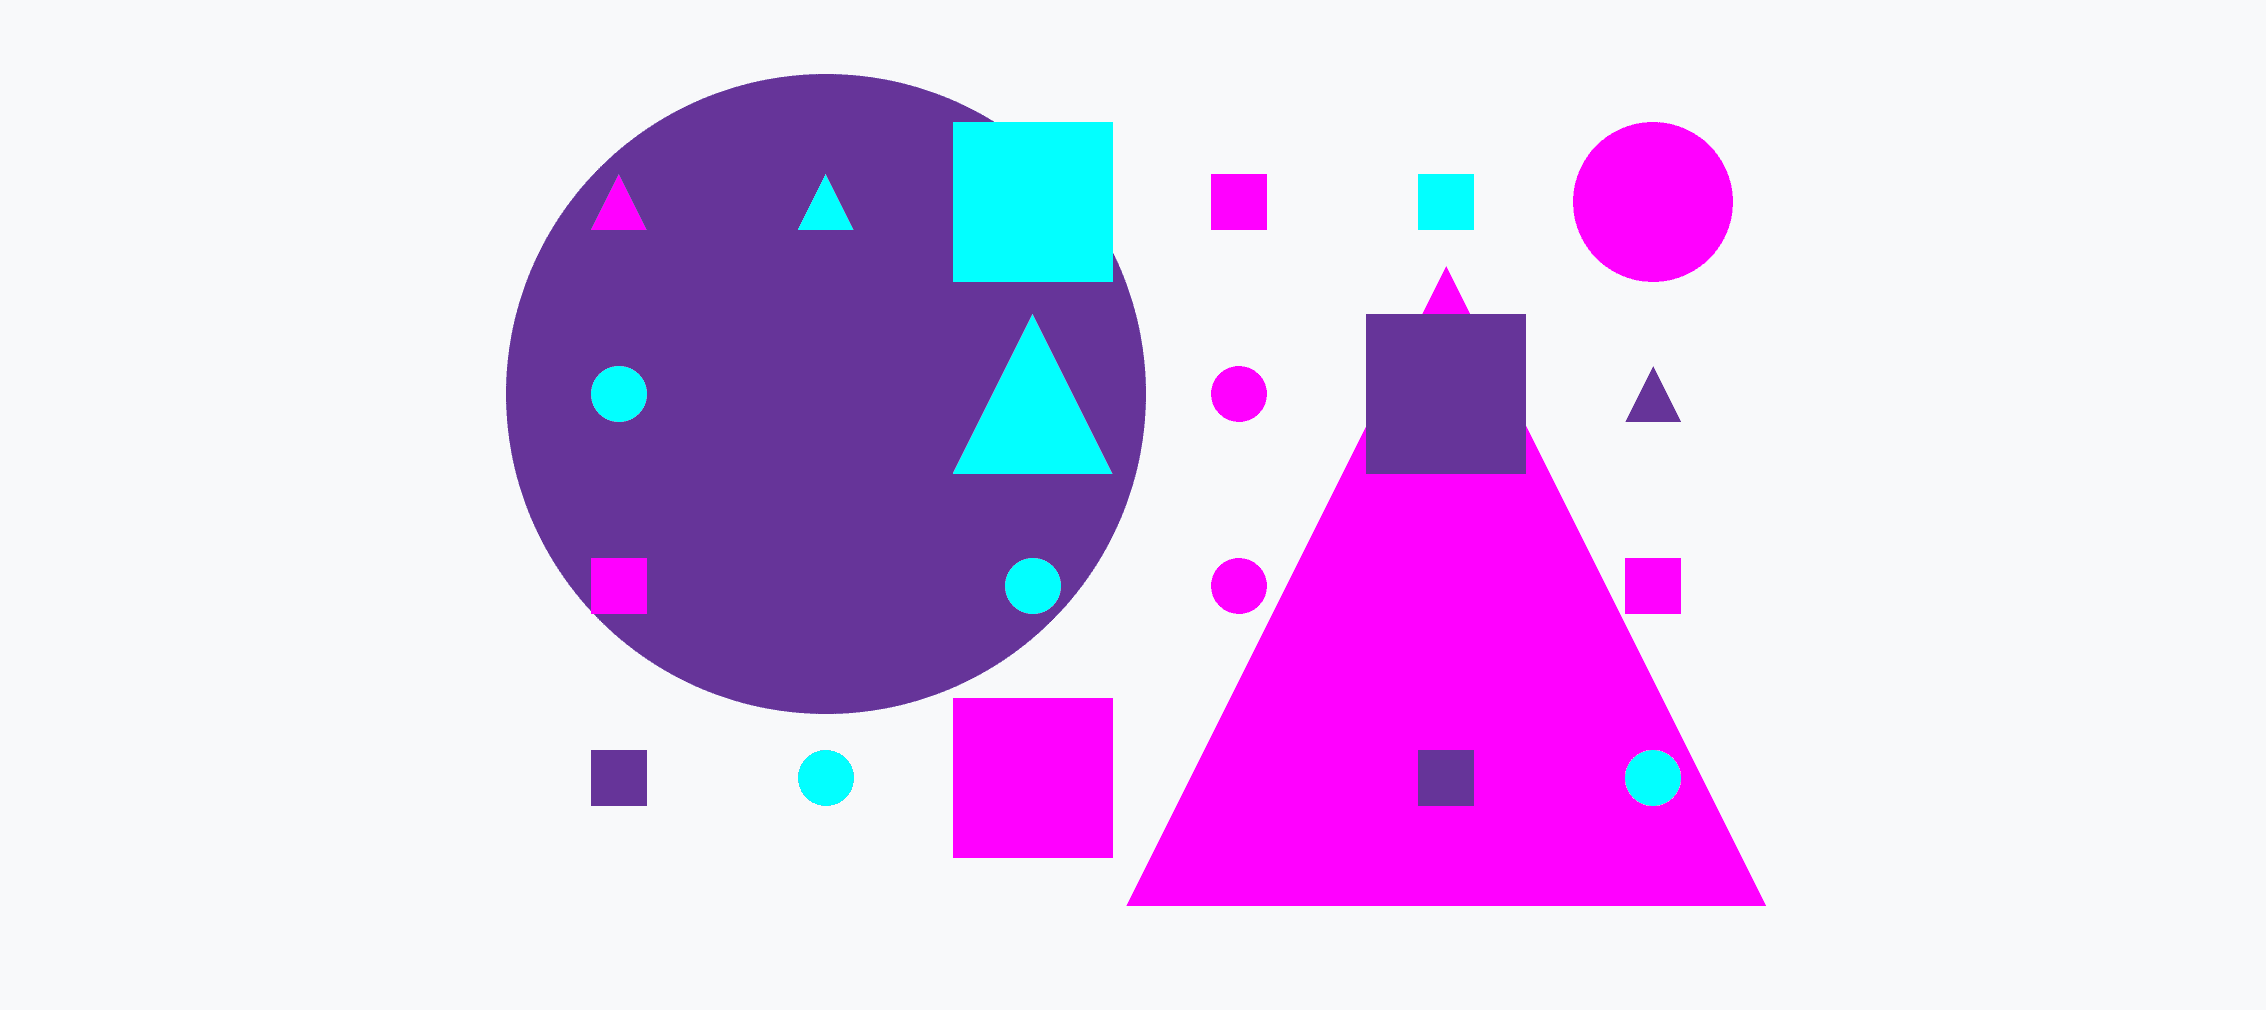 Een kleurrijk raster van kleine en grote cirkels, driehoeken en vierkanten.